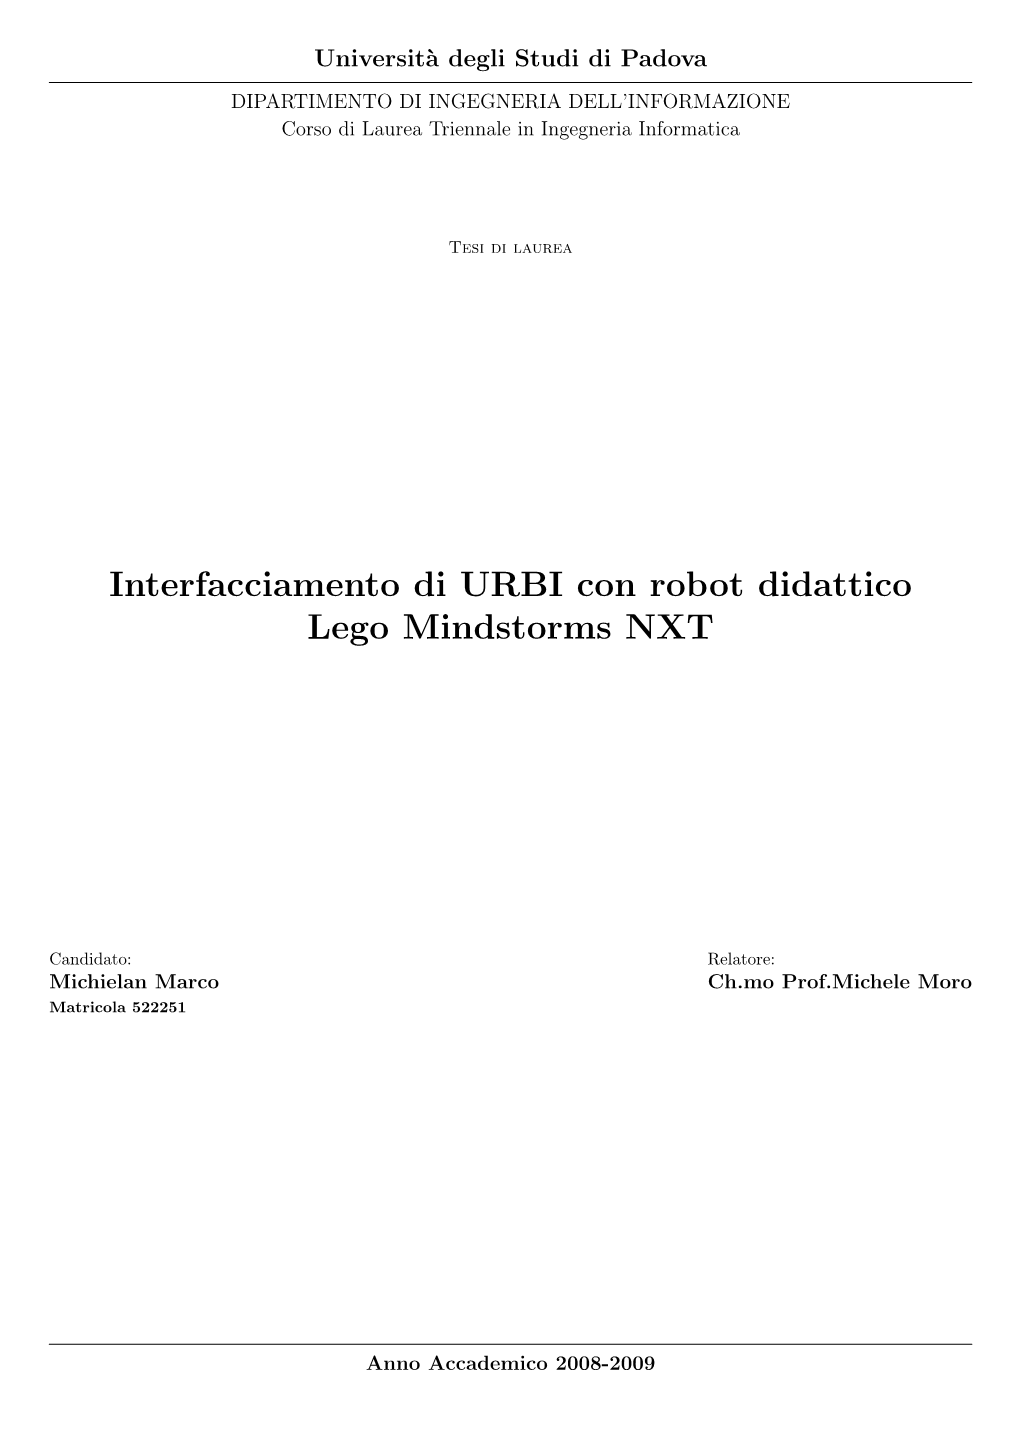 Interfacciamento Di URBI Con Robot Didattico Lego Mindstorms NXT